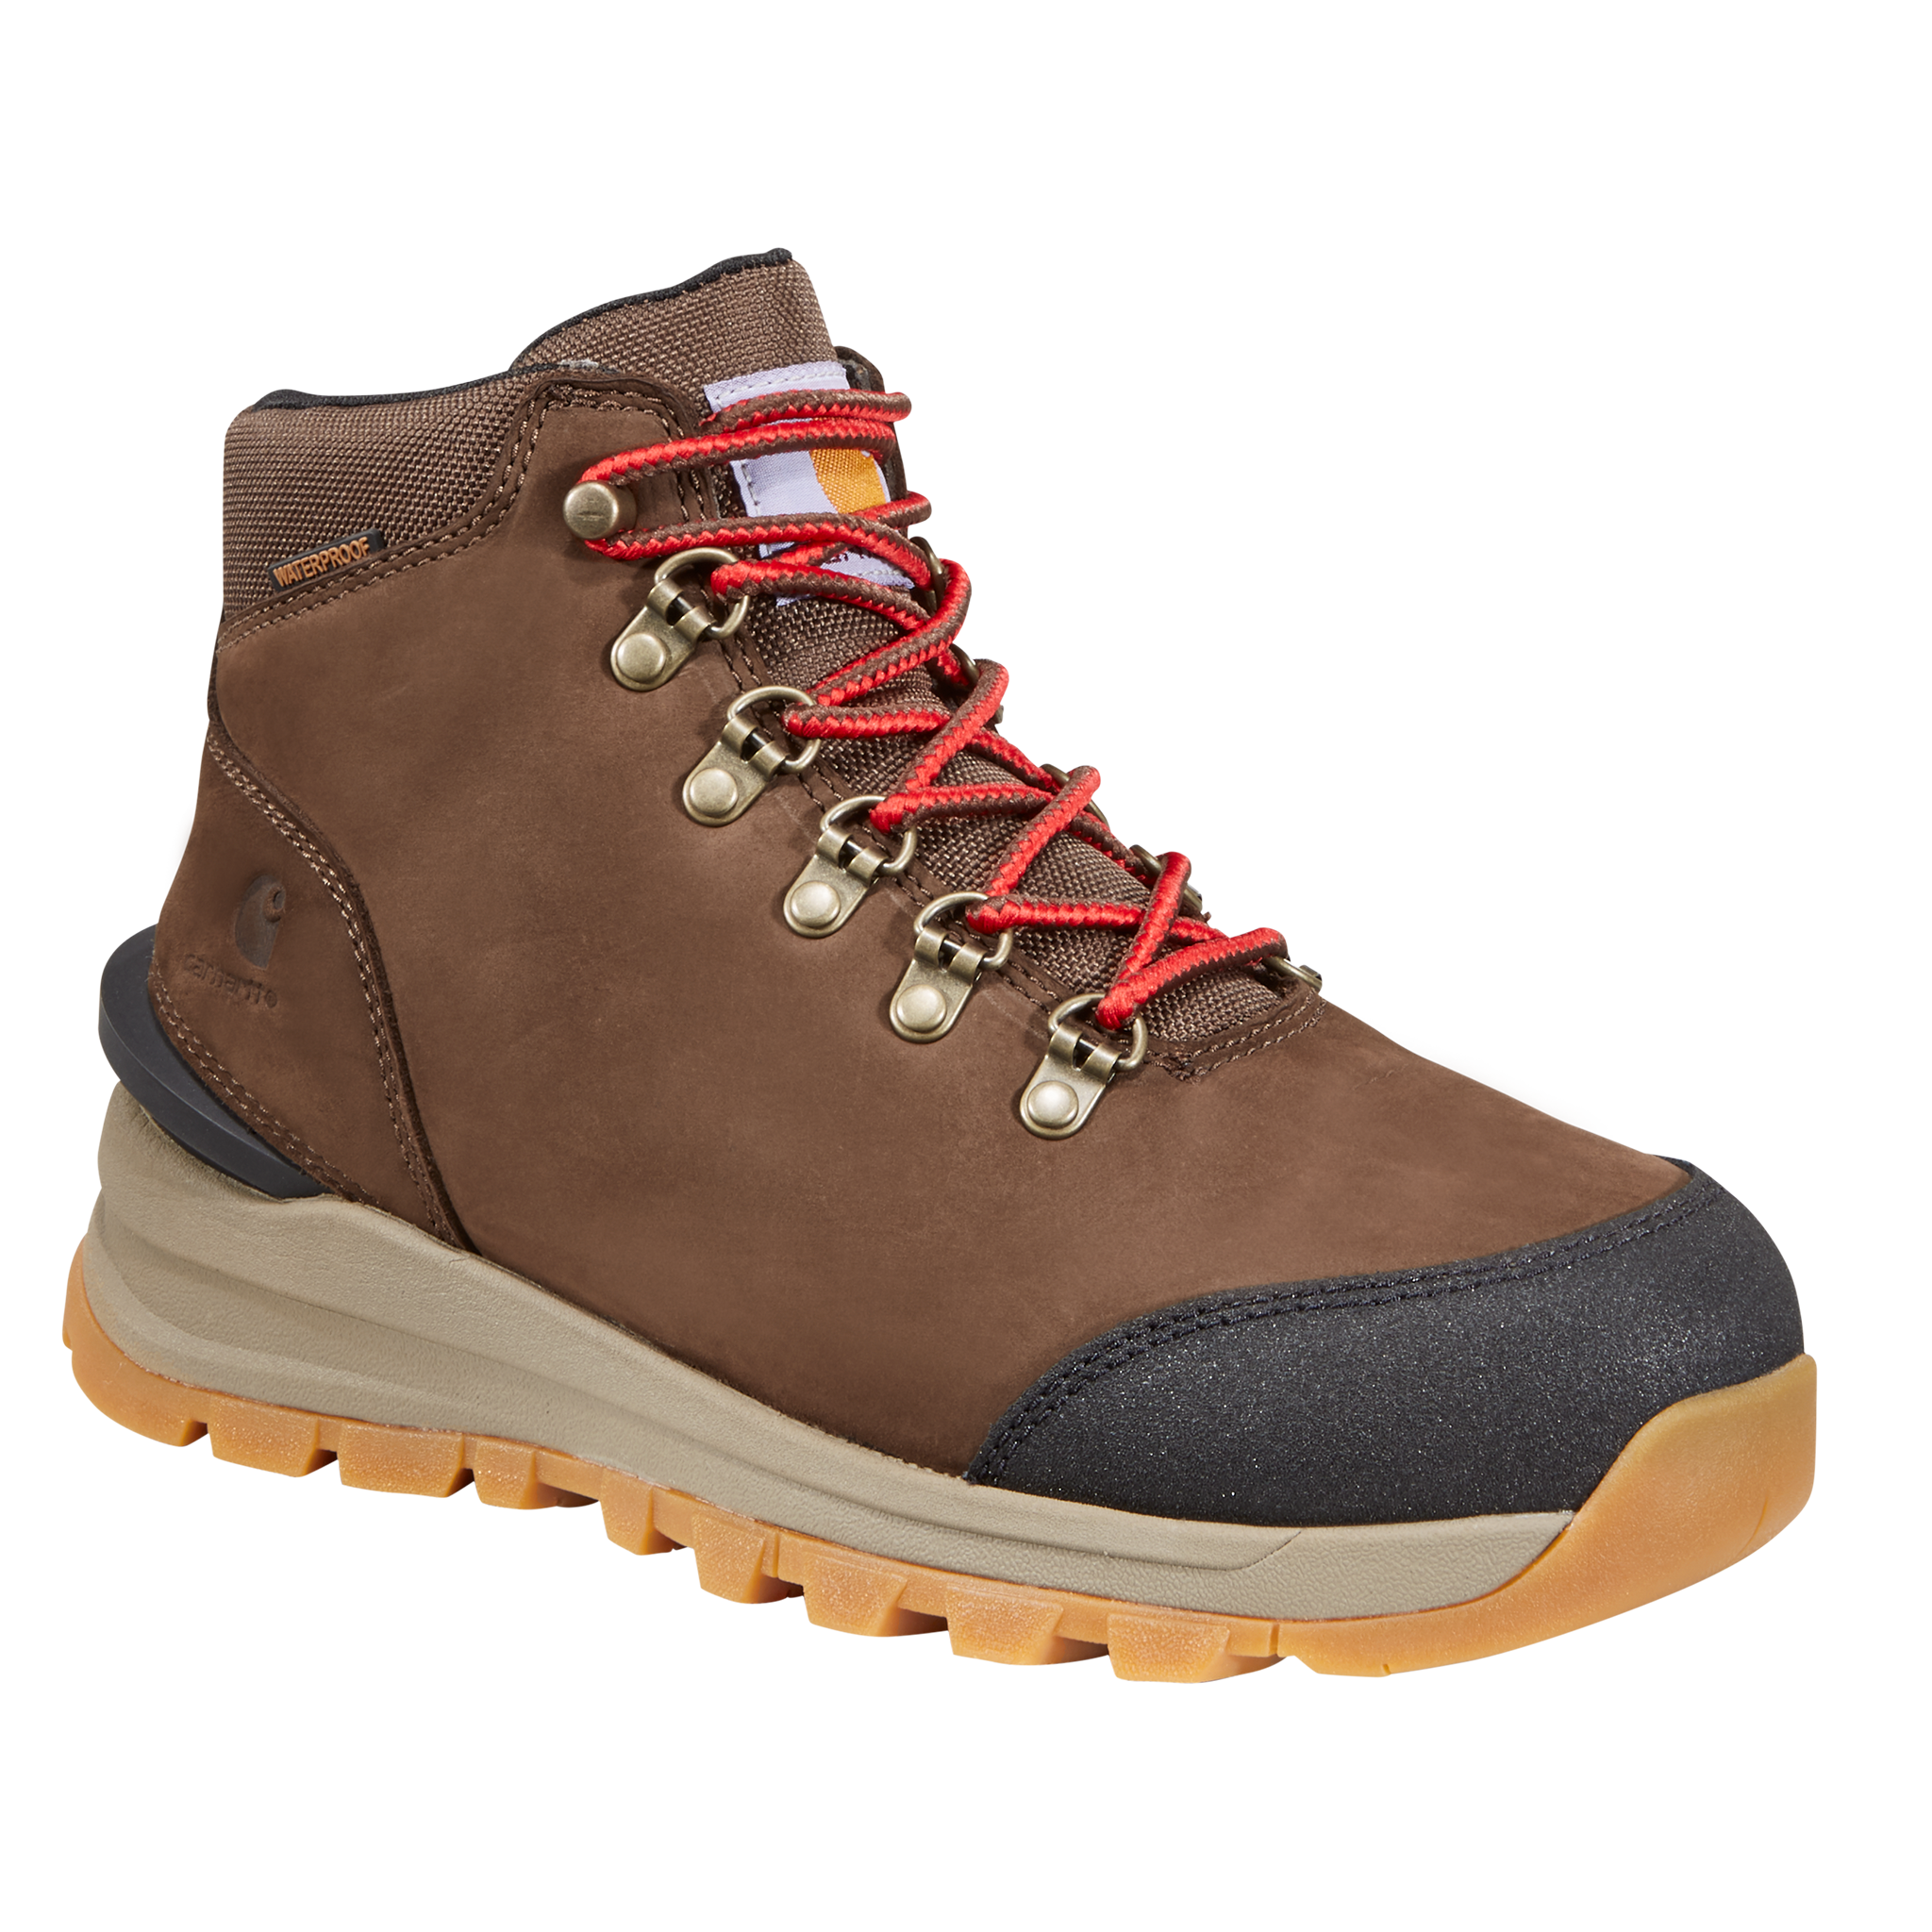 Carhartt Gilmore Waterproof Hiking Boots for Ladies - Dark Brown Nubuck - 9M